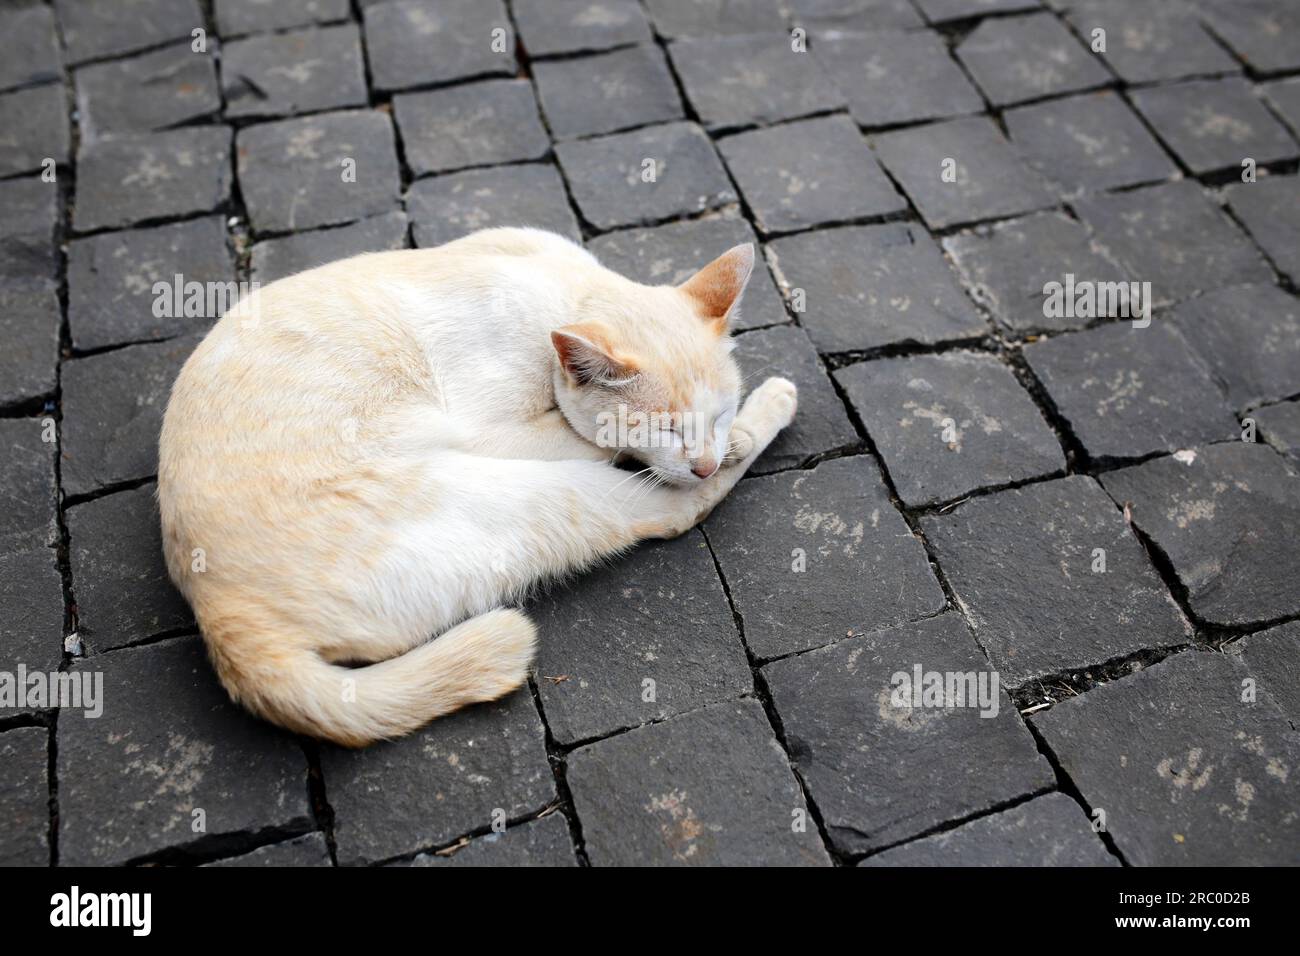 Eine Katze schlief tagsüber auf einer Straße, die mit Würfeln aus schwarzen Ziegeln gepflastert war. Auf der rechten Seite des Bildes befindet sich ein leerer Bereich. Stockfoto